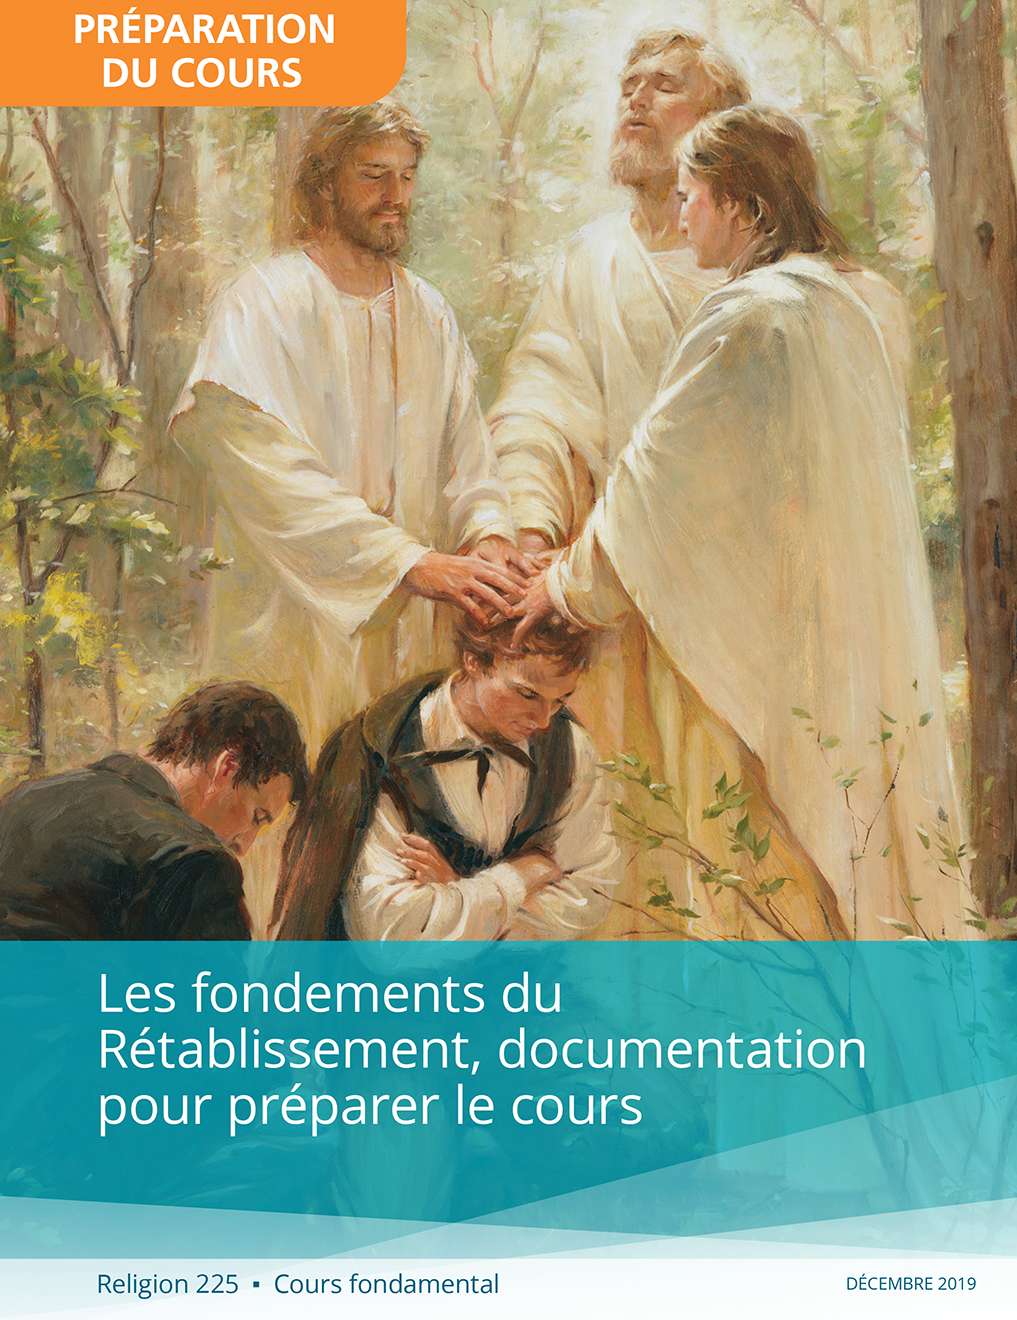 Les fondements du Rétablissement, Documentation pour se préparer au cours (Religion 225)